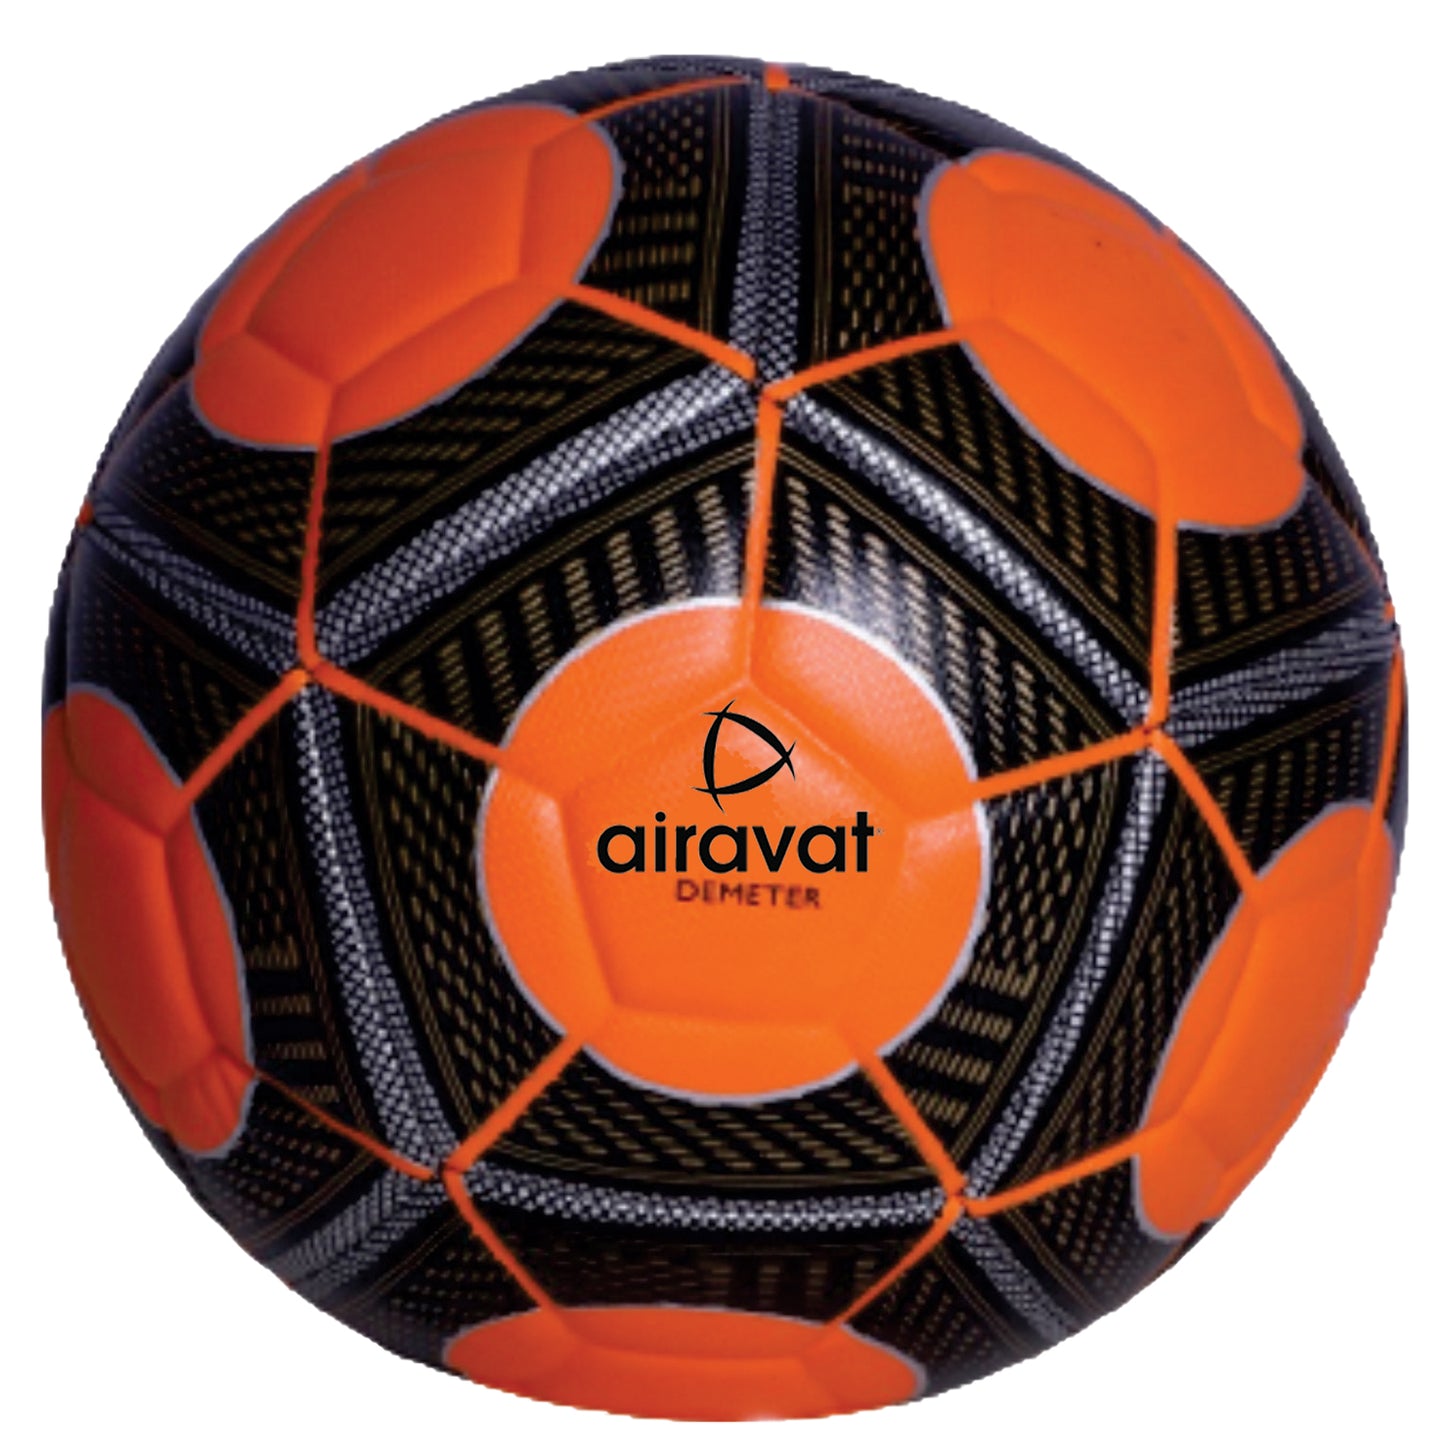 Demeter-best-soccer-ball-main-image-orange